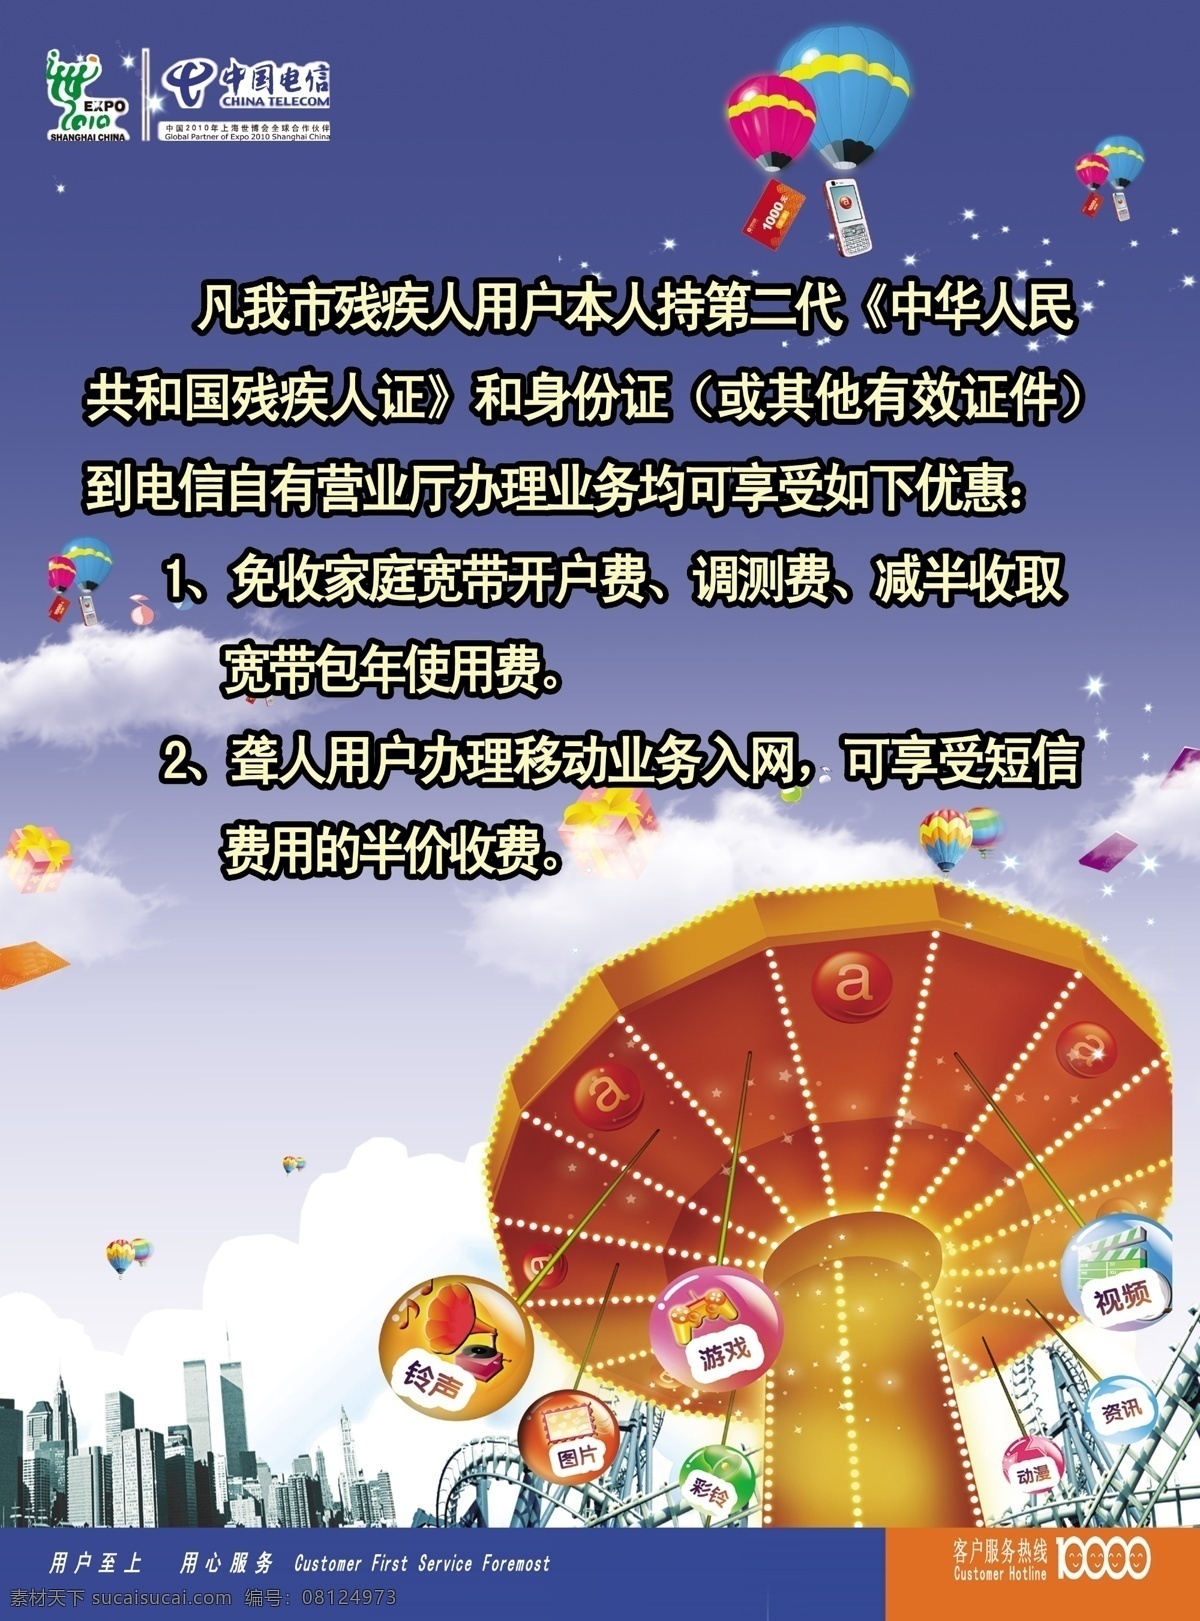 中国电信 残疾人 入网 优惠 白云 广告设计模板 楼宇 摩天轮 热气球 源文件 其他海报设计